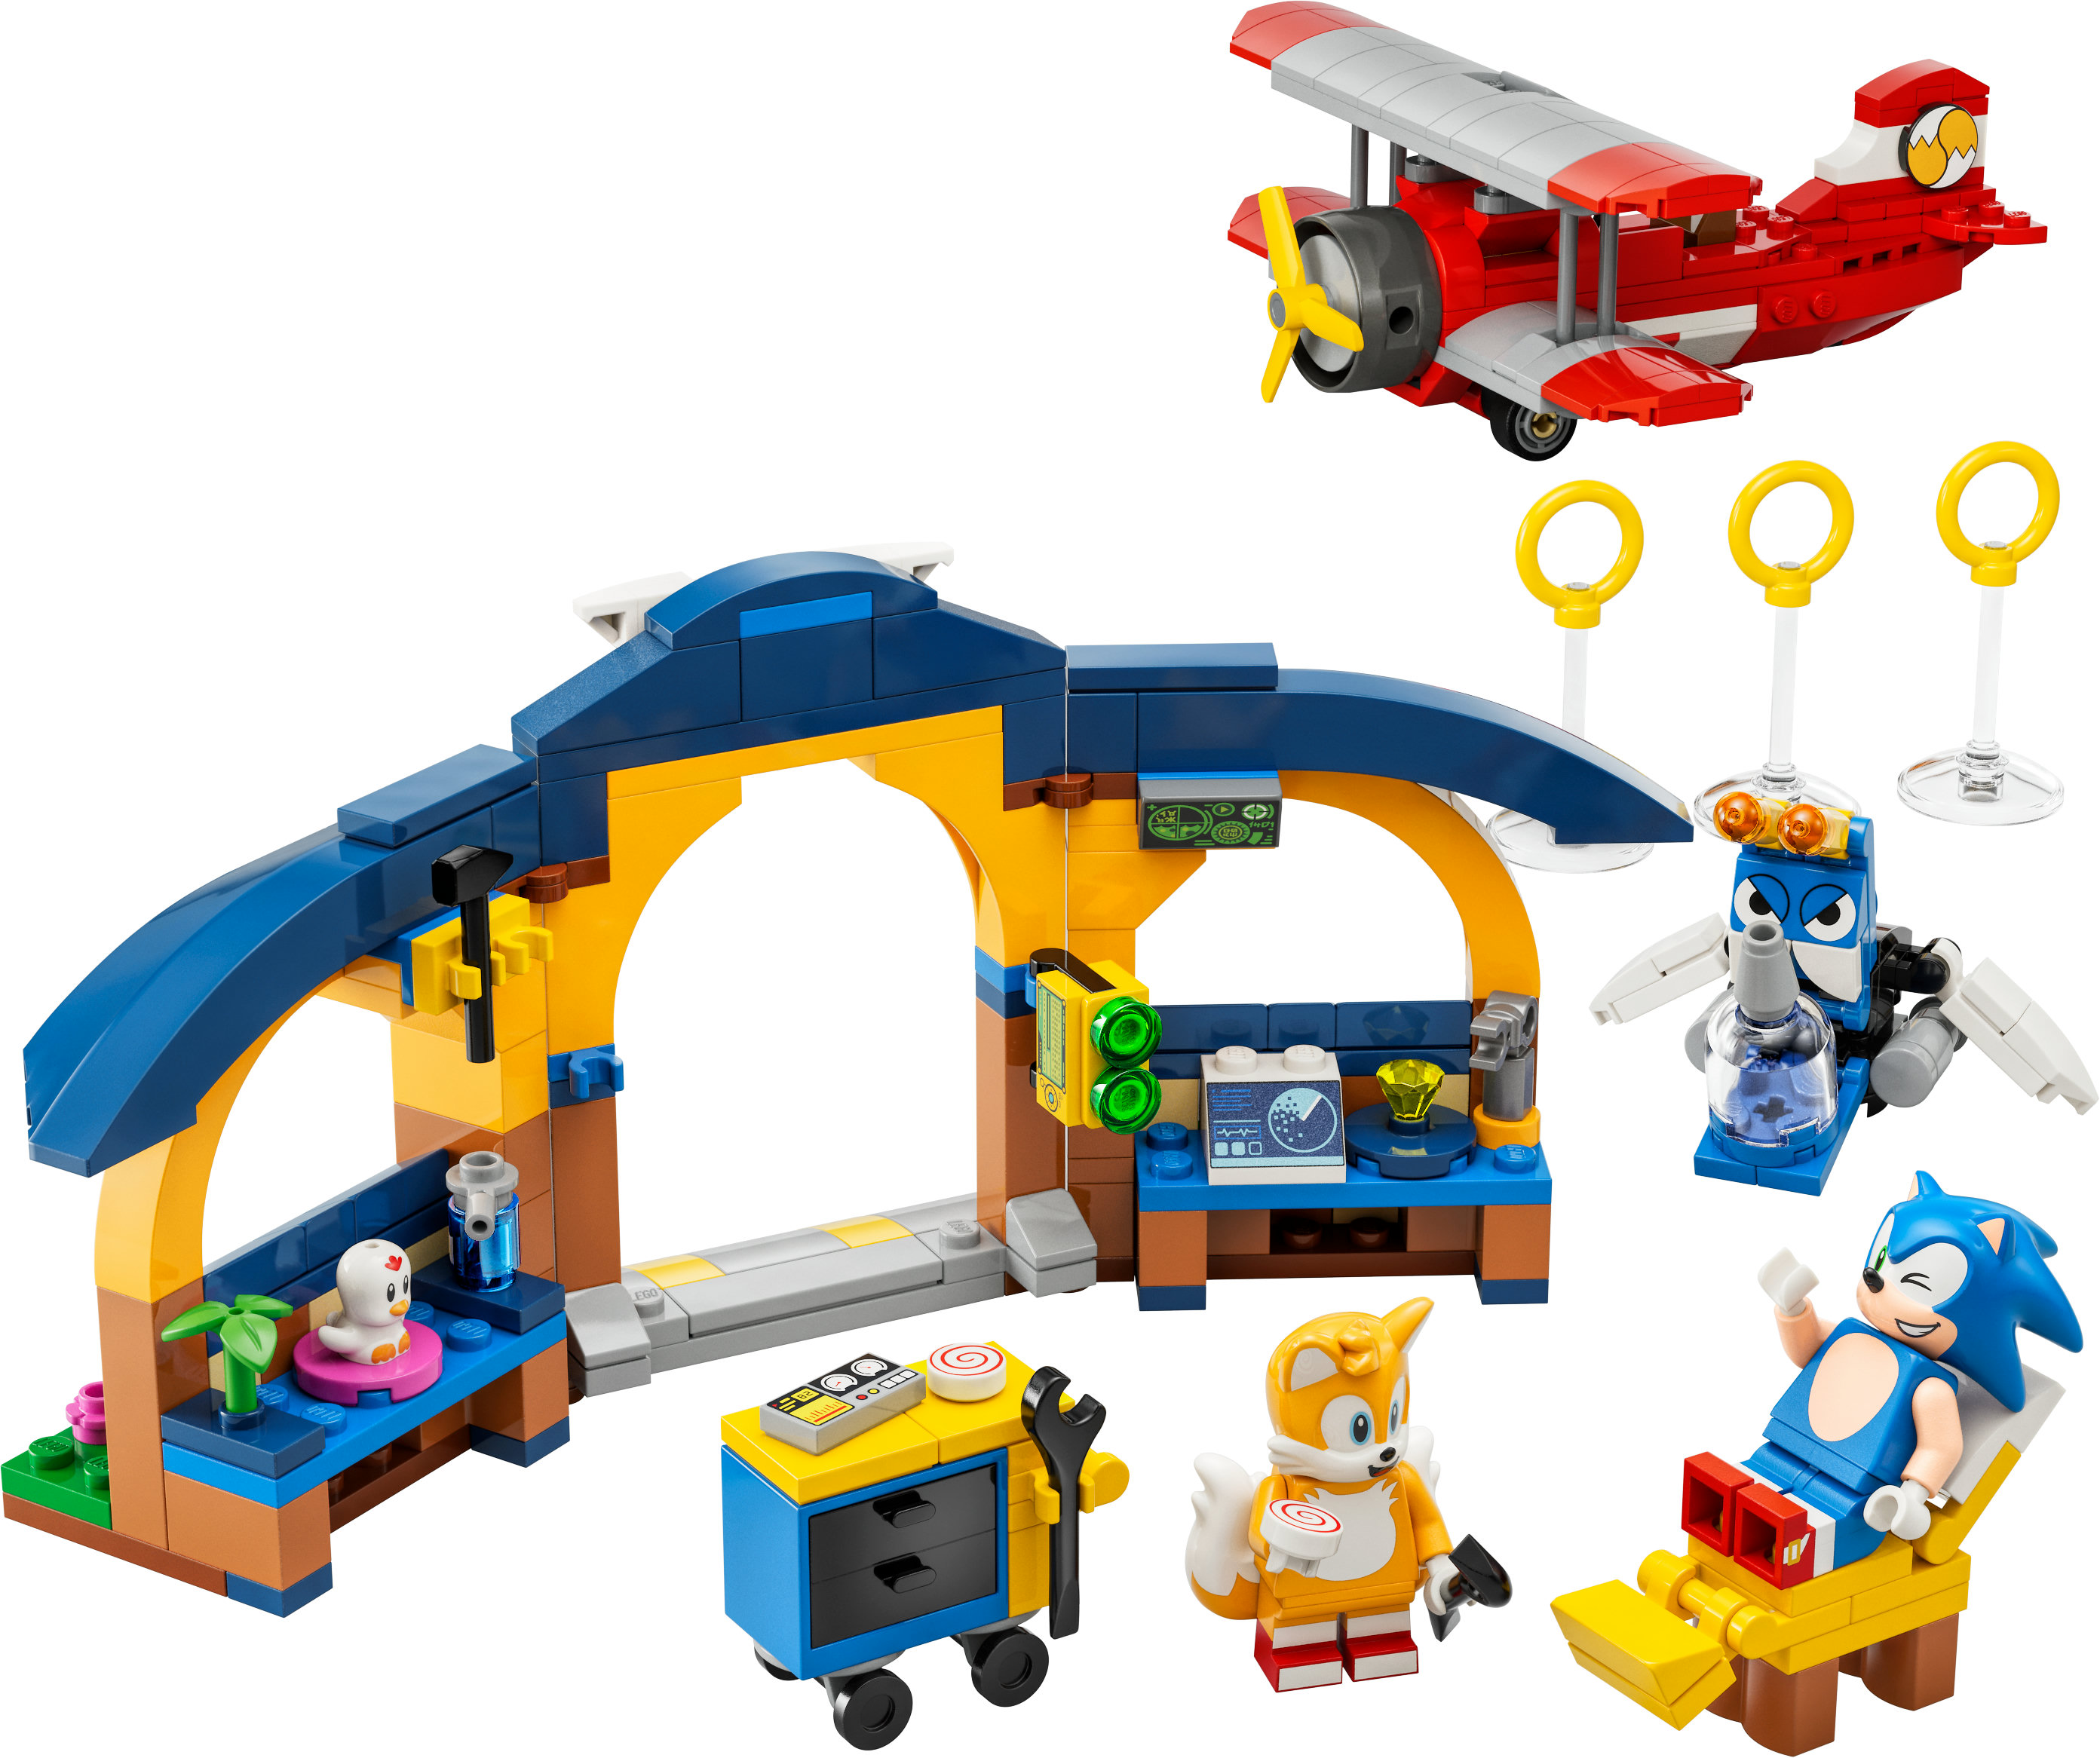 LEGO Sonic the Hedgehog 76991 Tails Tornadoflieger mit Werkstatt